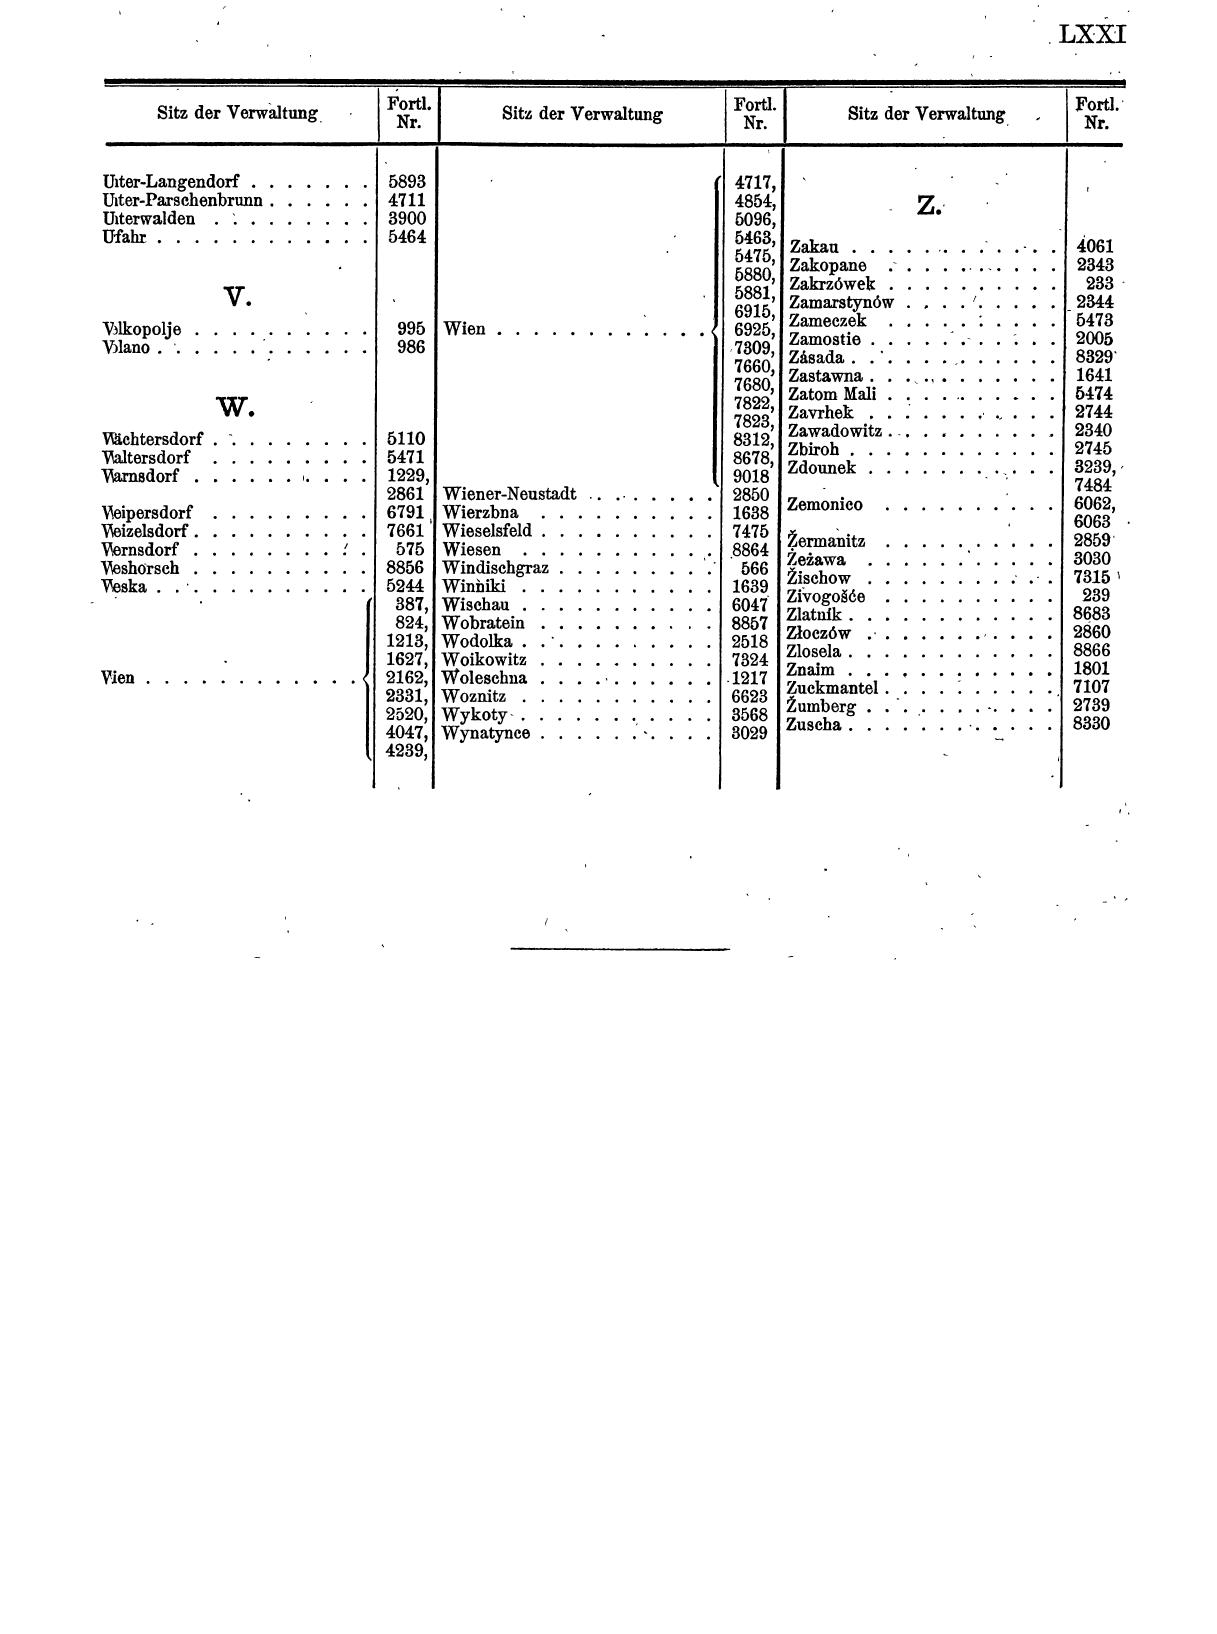 Zentralblatt für die Eintragungen in das Handelsregister 1913, Teil 1 - Seite 79